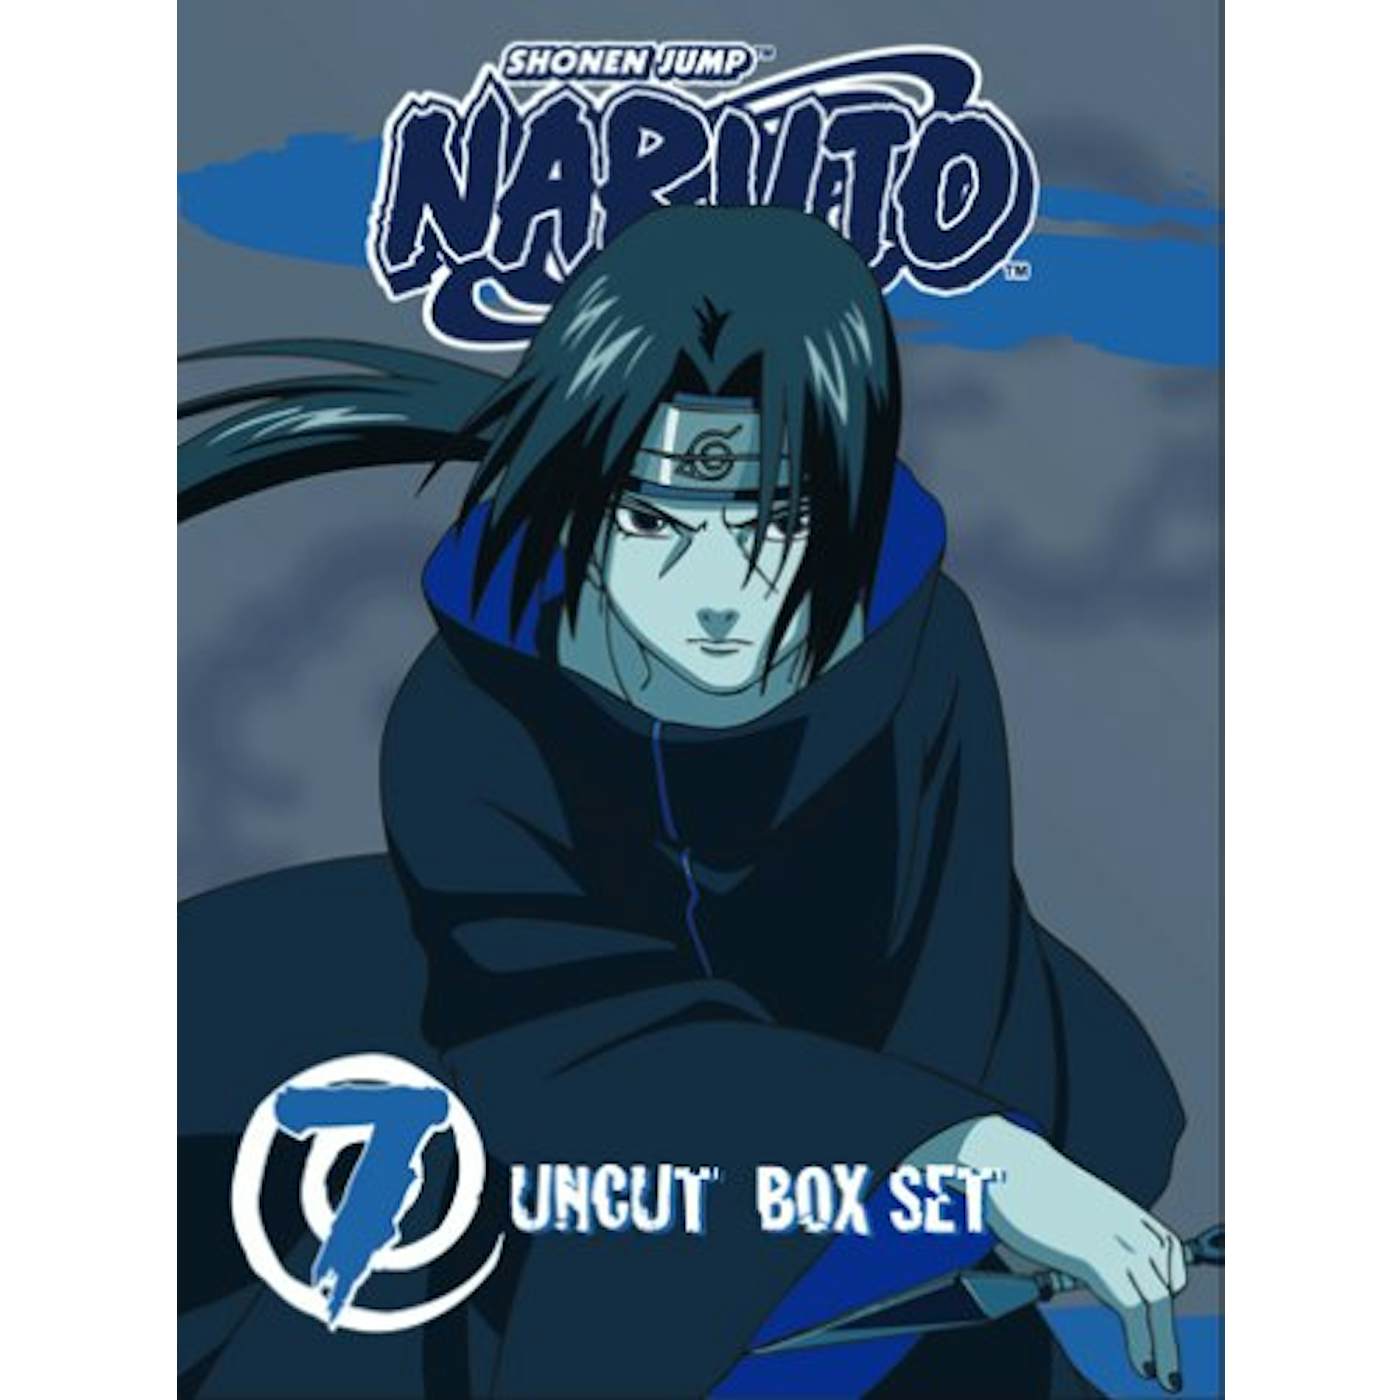 Naruto: Set 7 Blu-ray